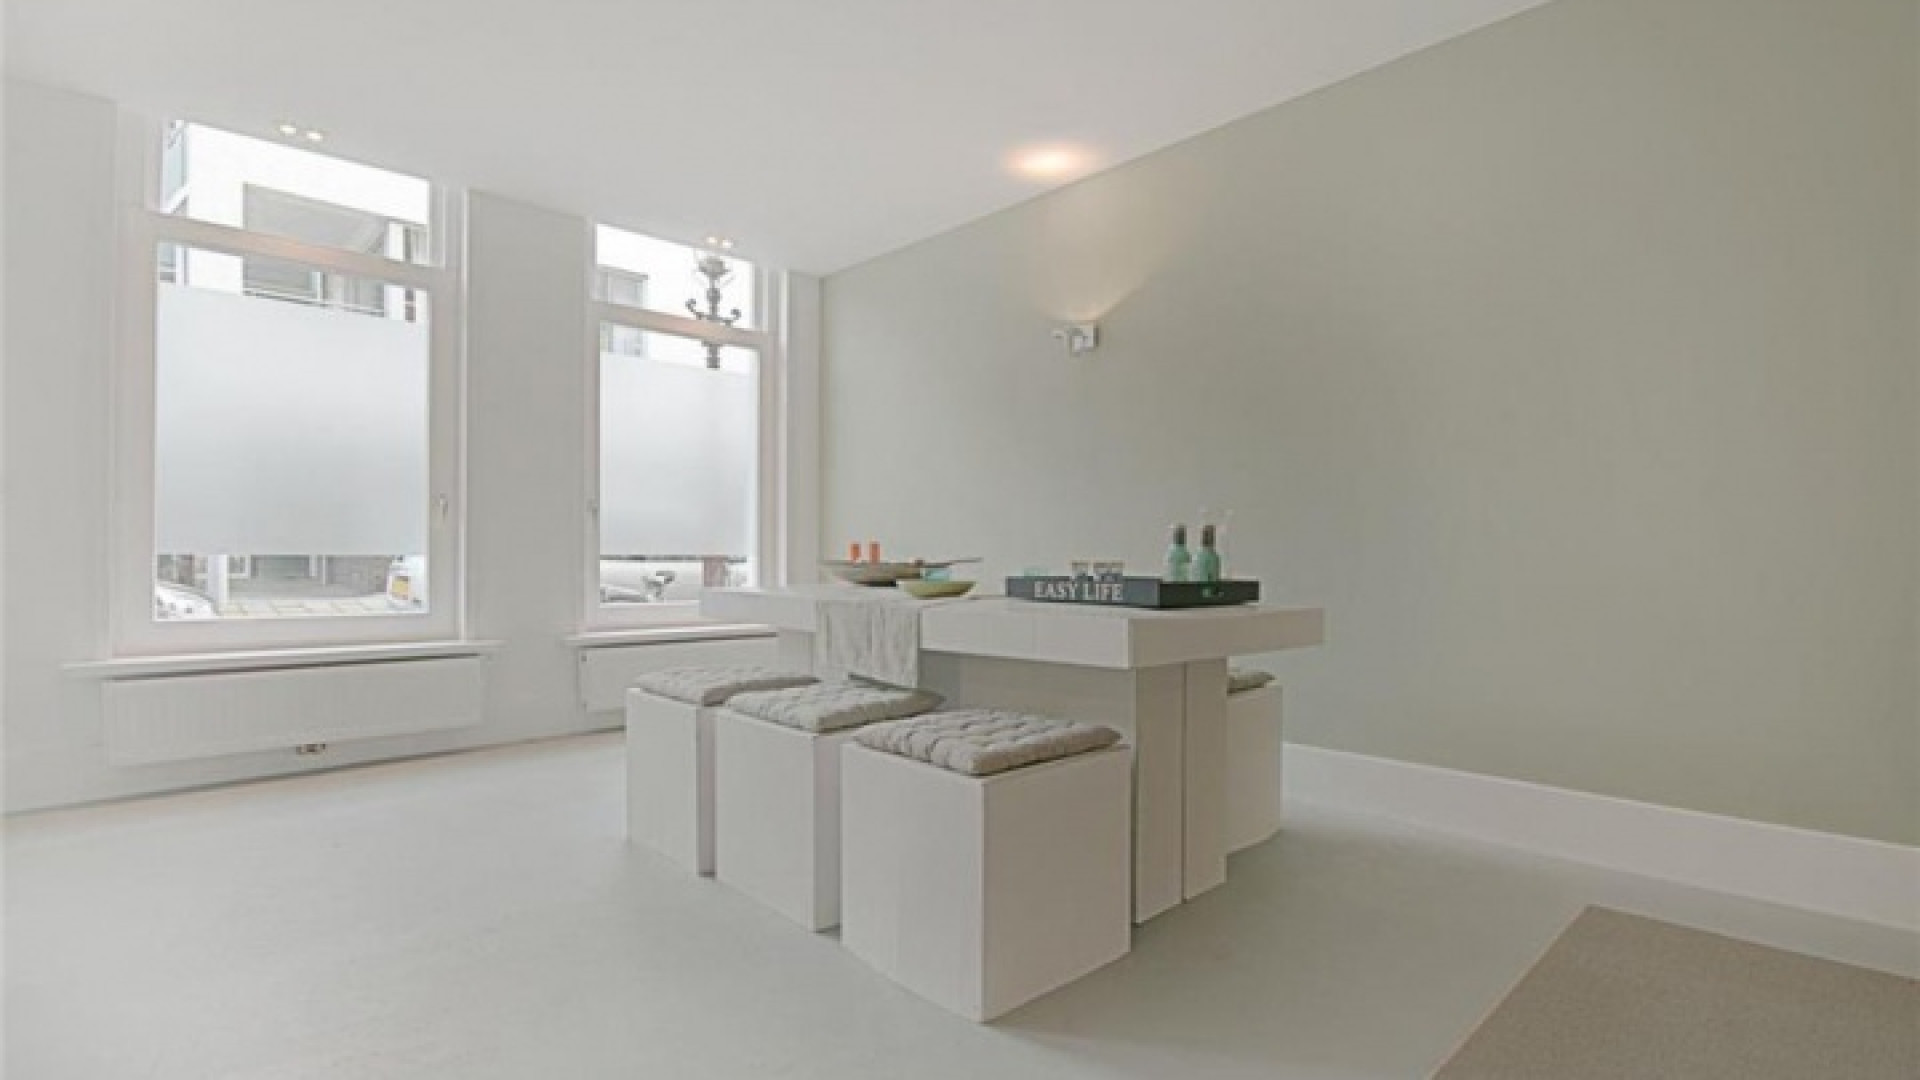 Sanne Vogel koopt leuk en knus huis in Amsterdam West. Zie foto's